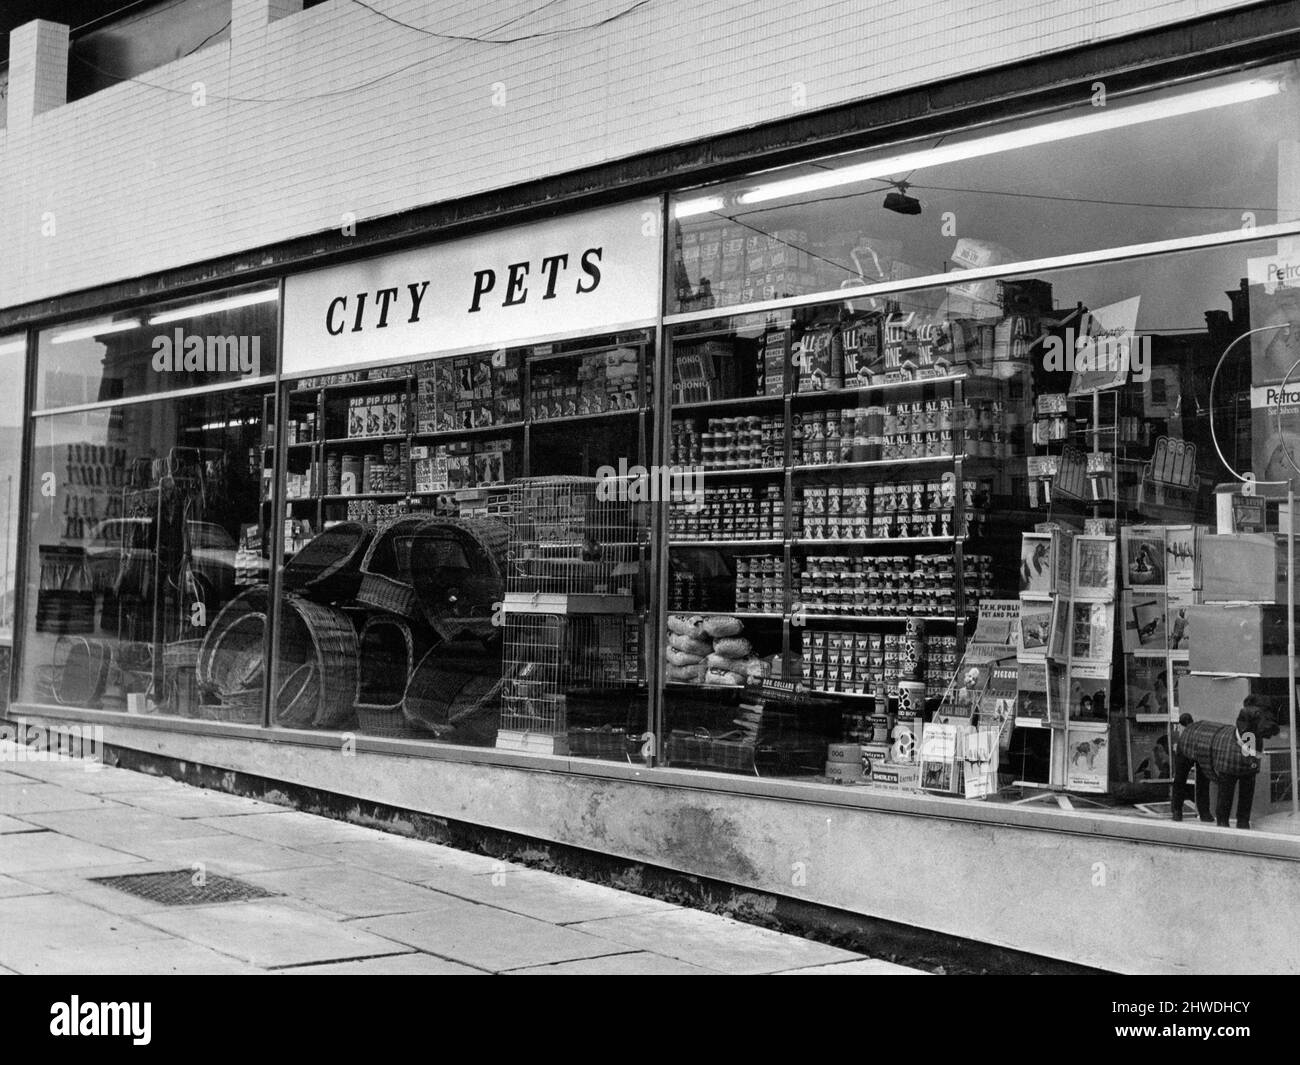 City Pets in St Johns Precinct, Liverpool, 9th avril 1970. Nouvelle boutique appartenant à M. Roberts. Banque D'Images